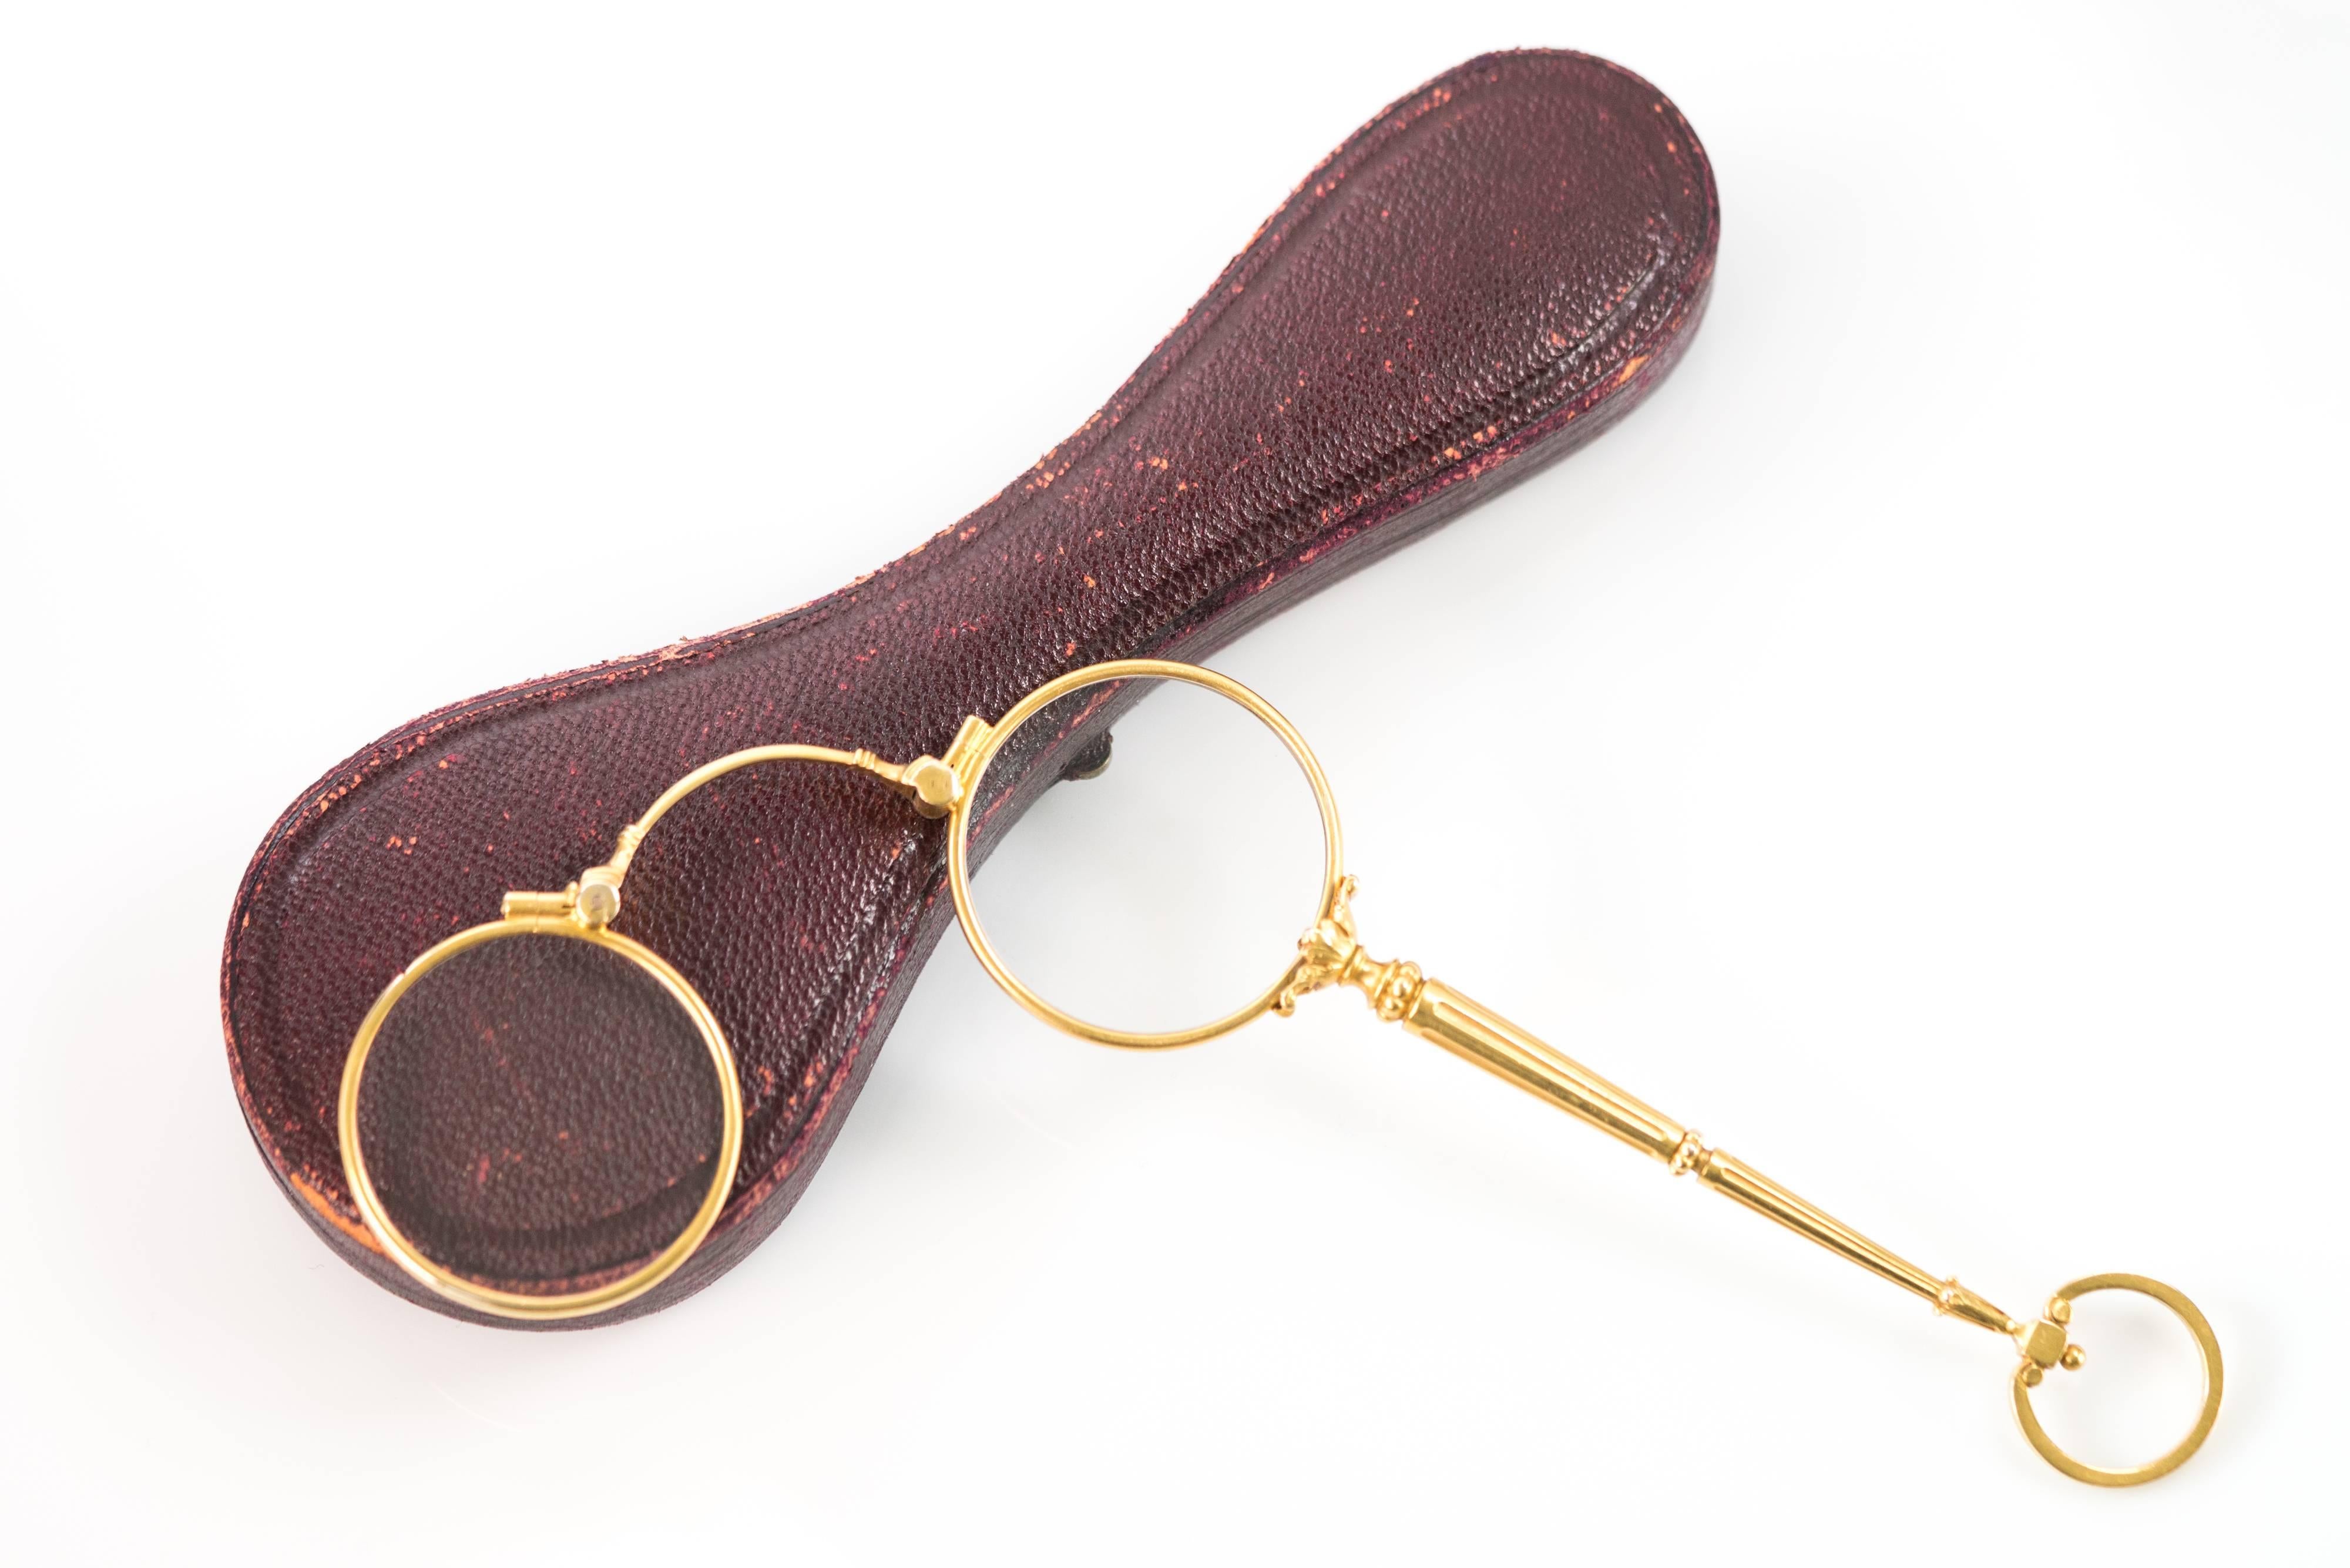 Diese 14K Gelbgold Curry und Paxton London Bifocal Lorgnette Brille aus der Jahrhundertwende kommt in dem originalen burgunderroten Leder- und lila Samtetui mit Scharnier und Verschluss. Ein zierlicher und dekorativer Zughebel in der Mitte des